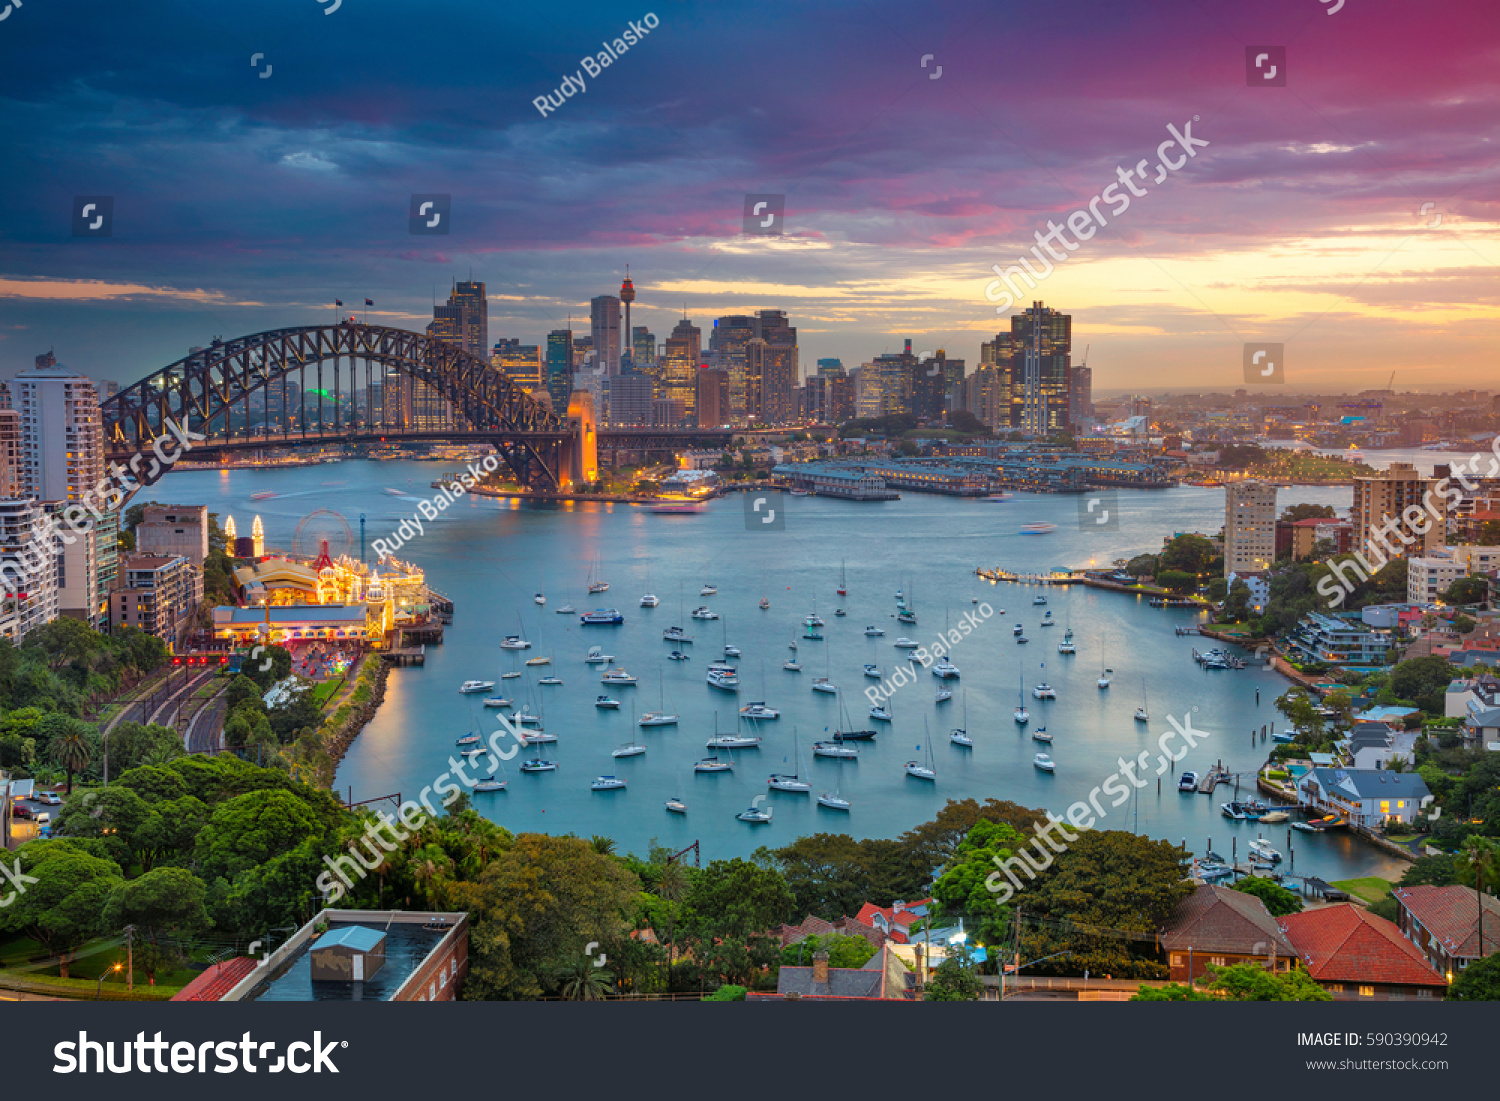 Sydney. Cityscape image of Sydney, Australia with Harbour Bridge and Sydney skyline during sunset. #590390942